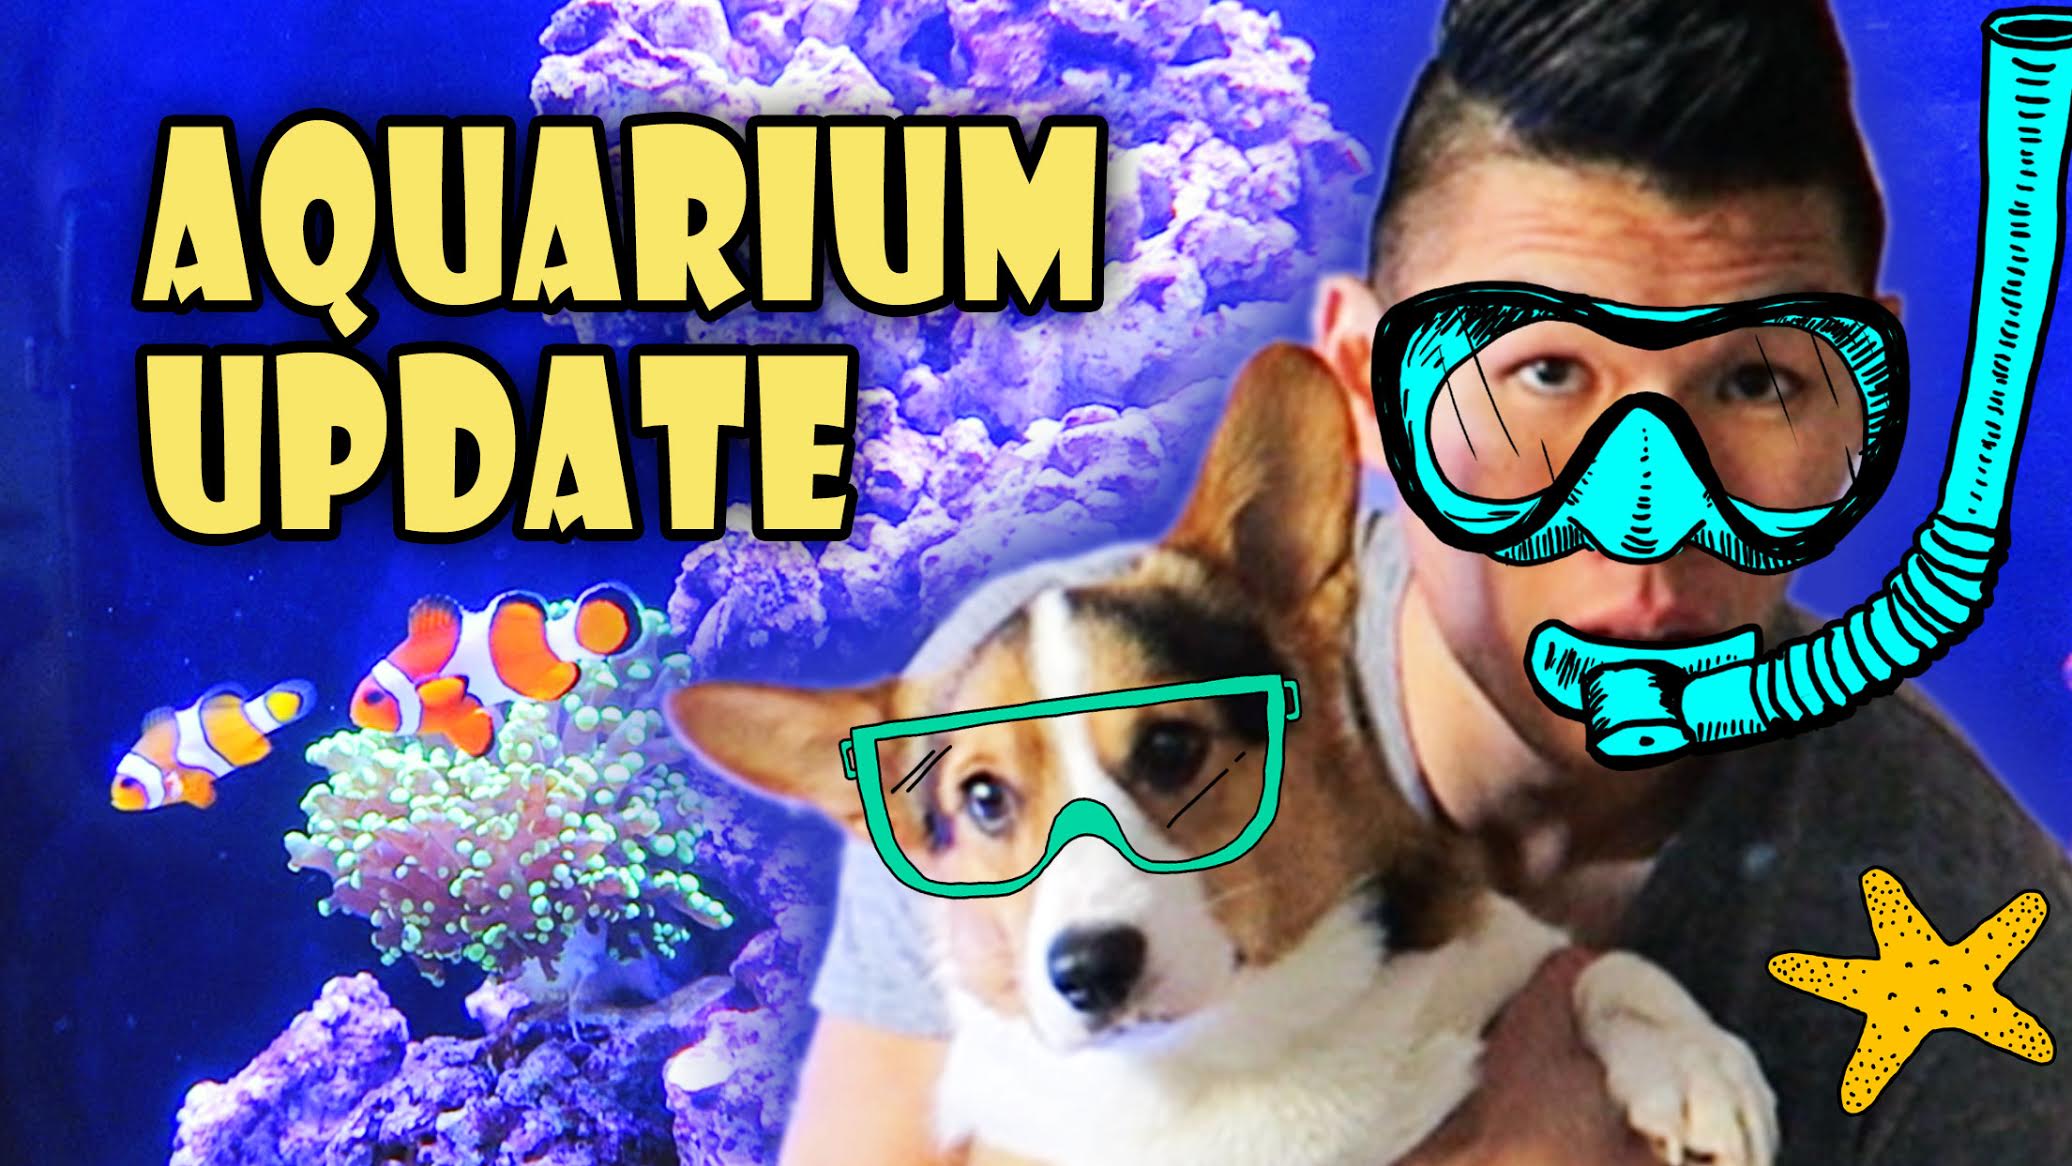 New Saltwater Reef Aquarium | Crazy Spending Spree!